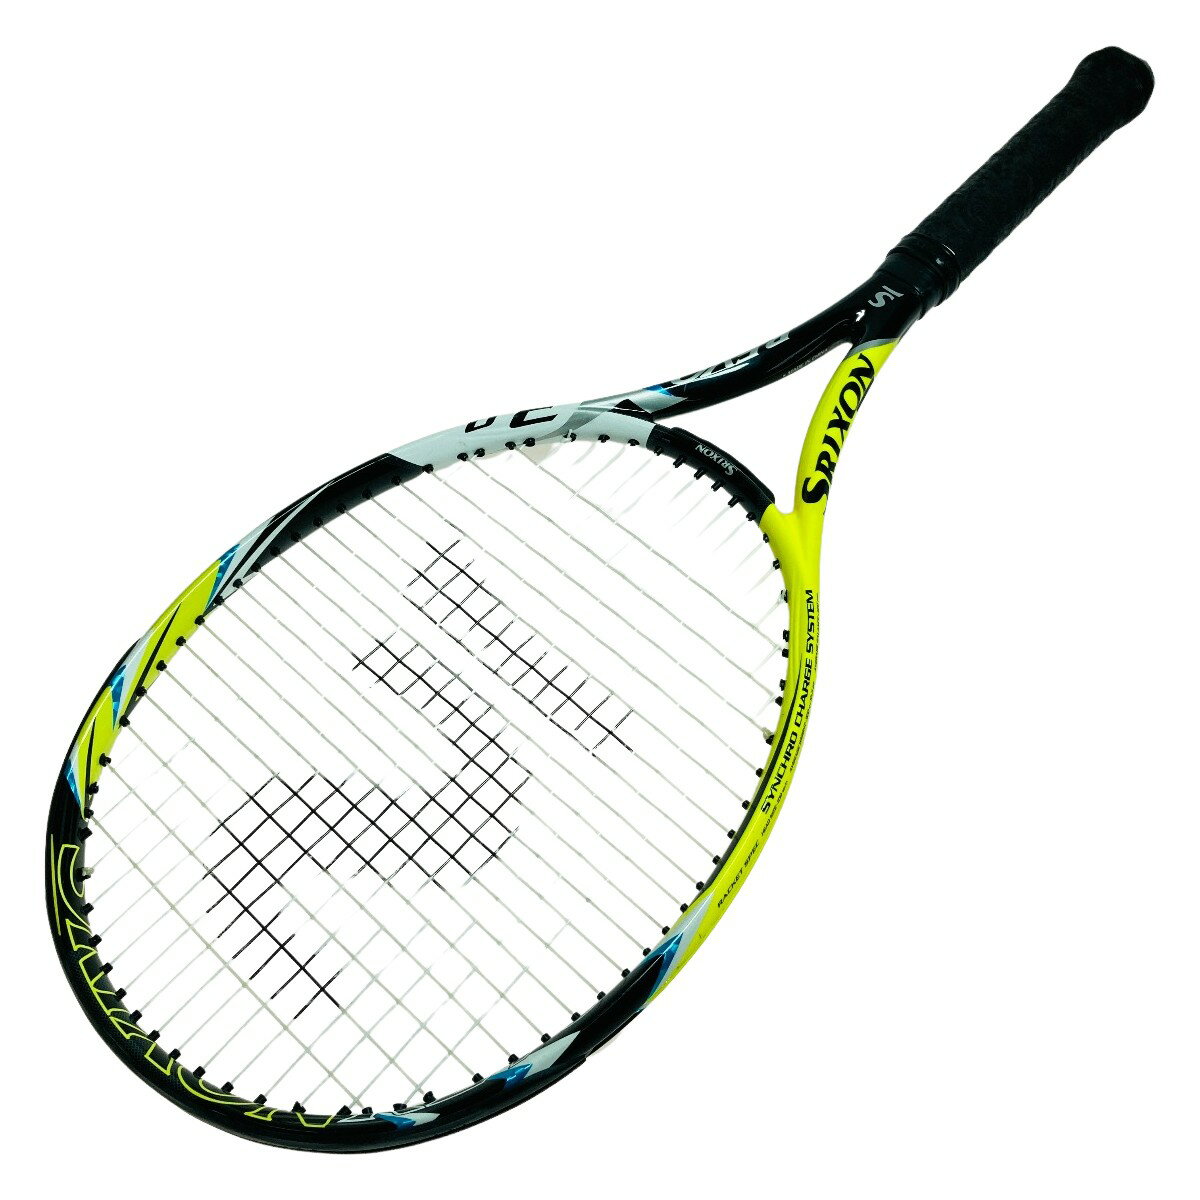 ◎◎【中古】DUNLOP ダンロップ SRIXON スリクソン REVO レヴォ 3.0 硬式テニスラケット #2 Cランク